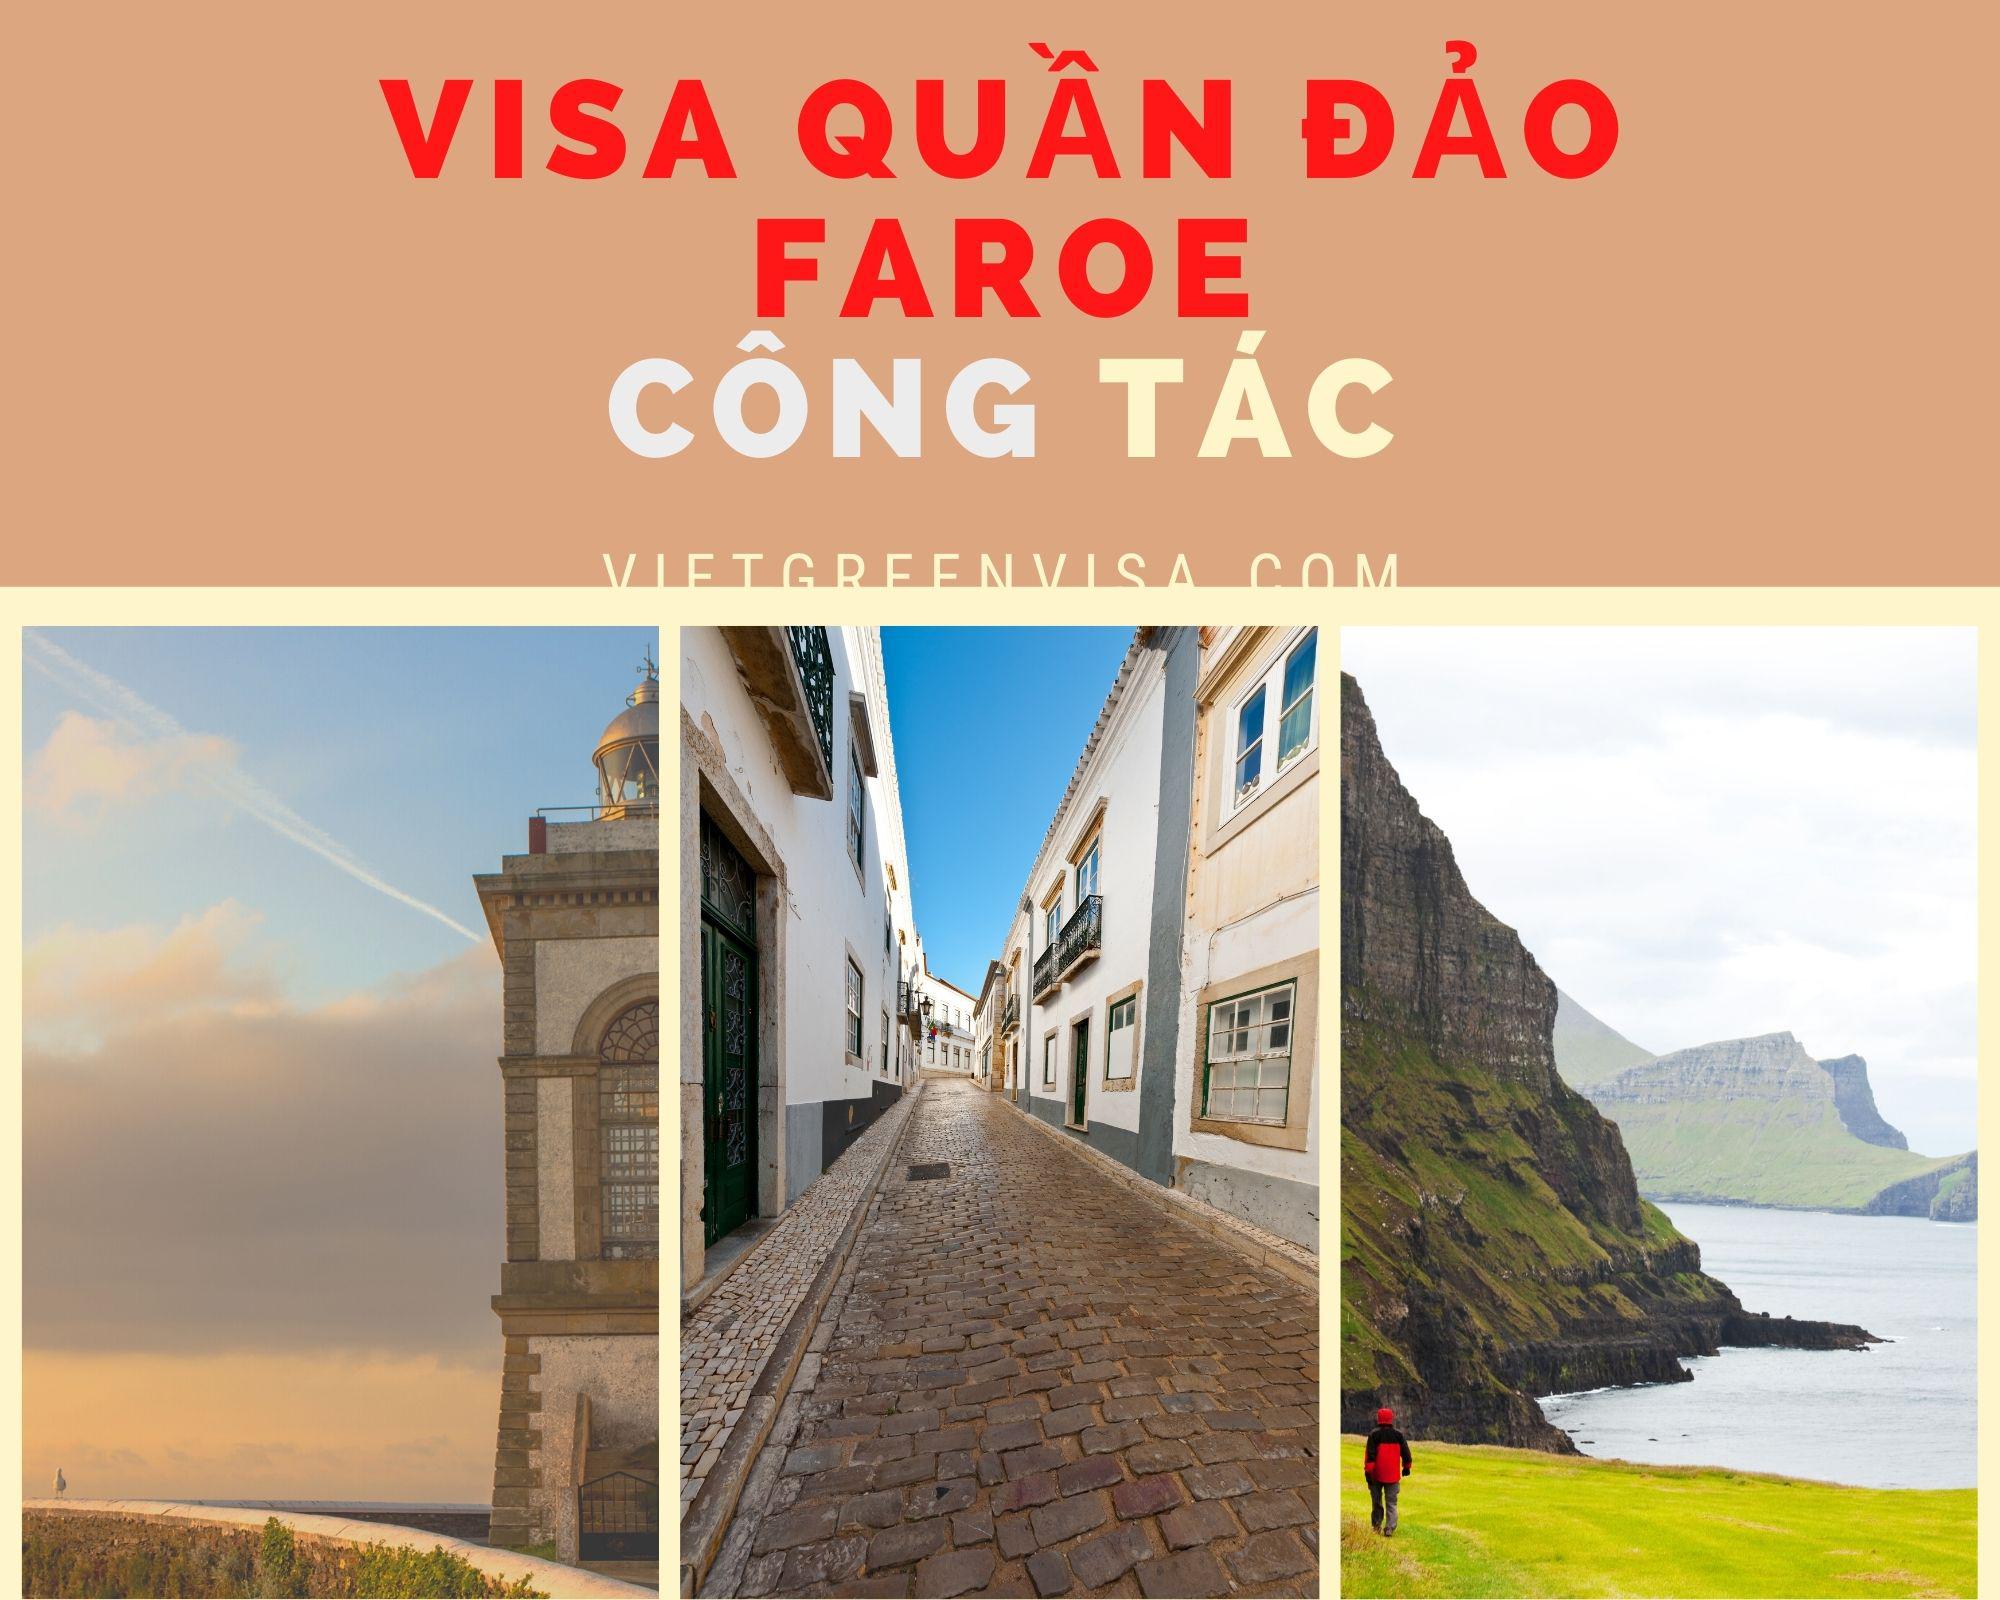 Dịch vụ visa sang Faroe diện công tác uy tín, giá rẻ